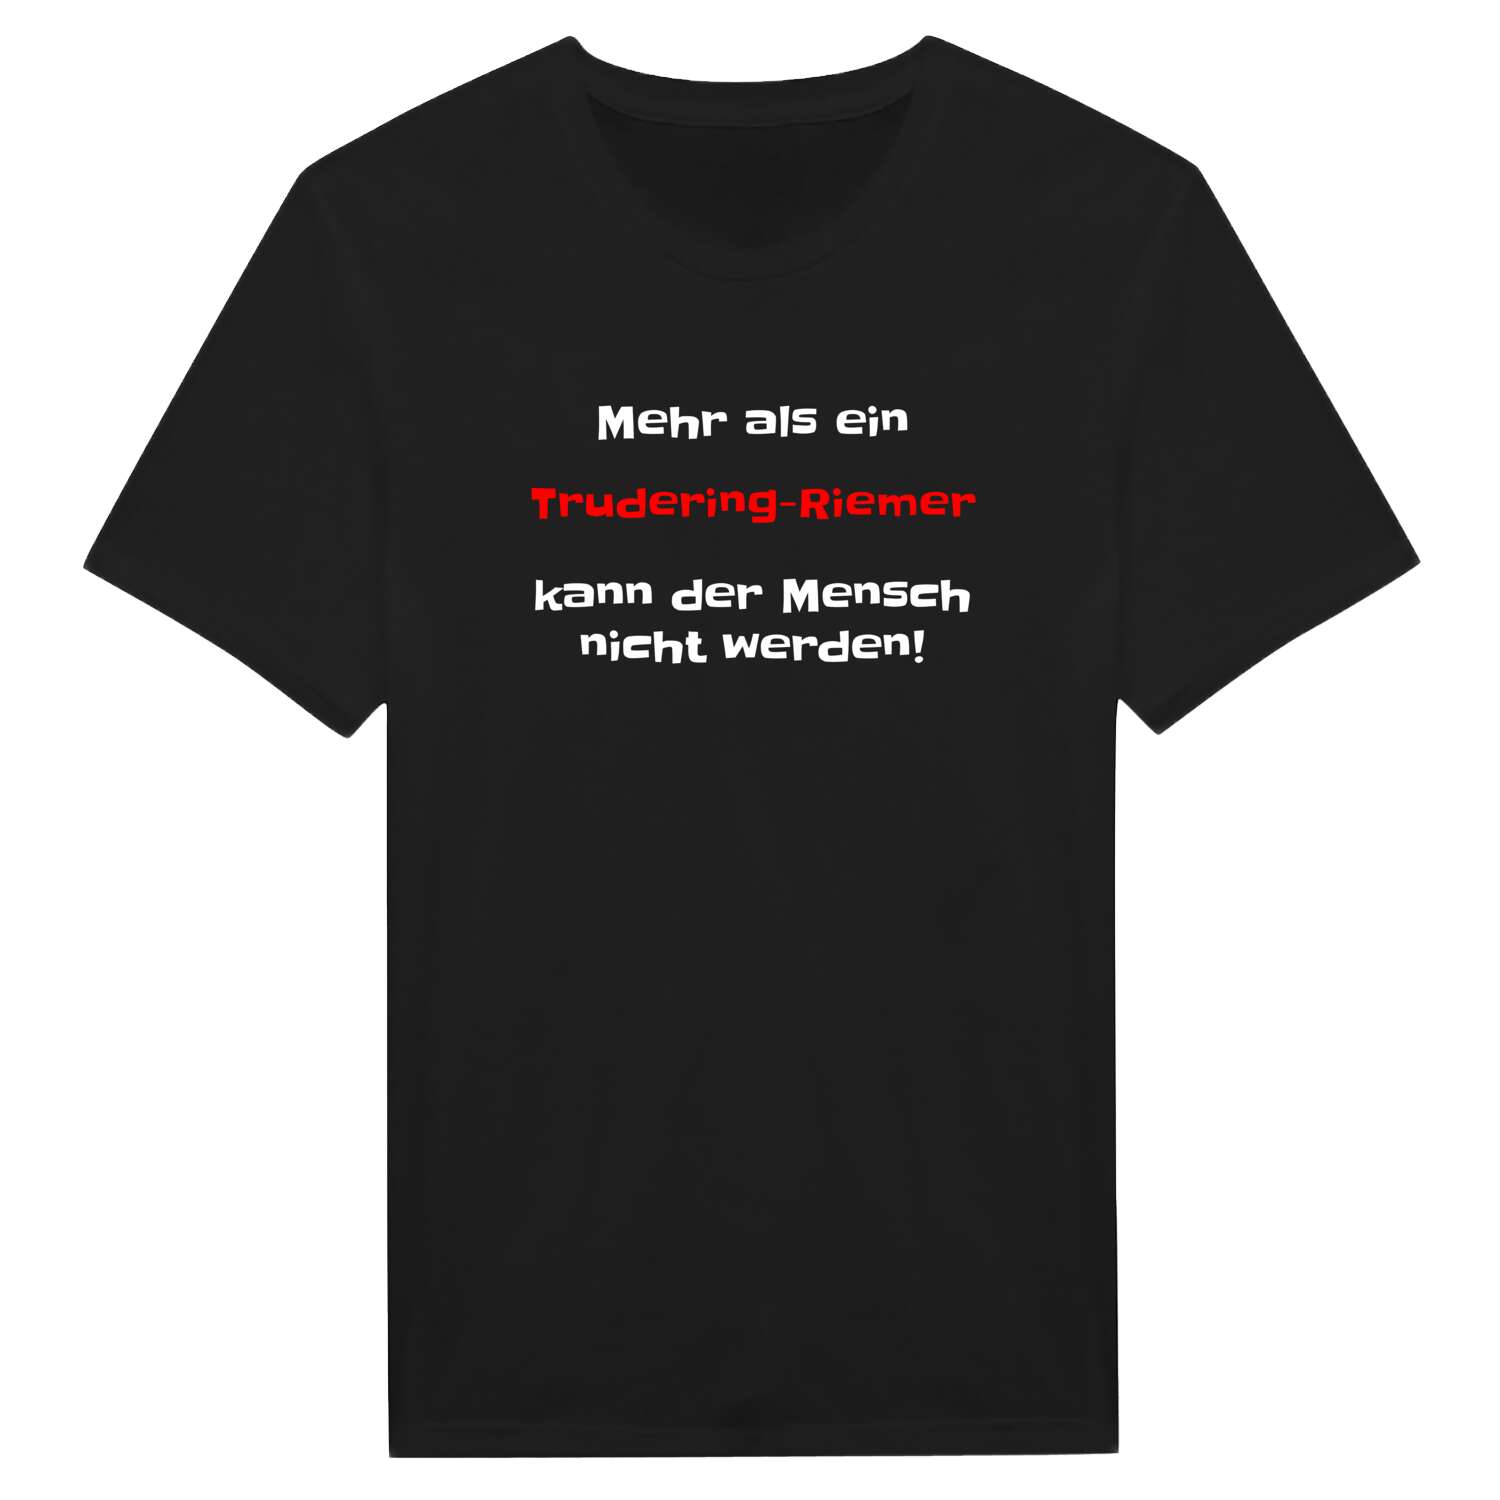 Trudering-Riem T-Shirt »Mehr als ein«